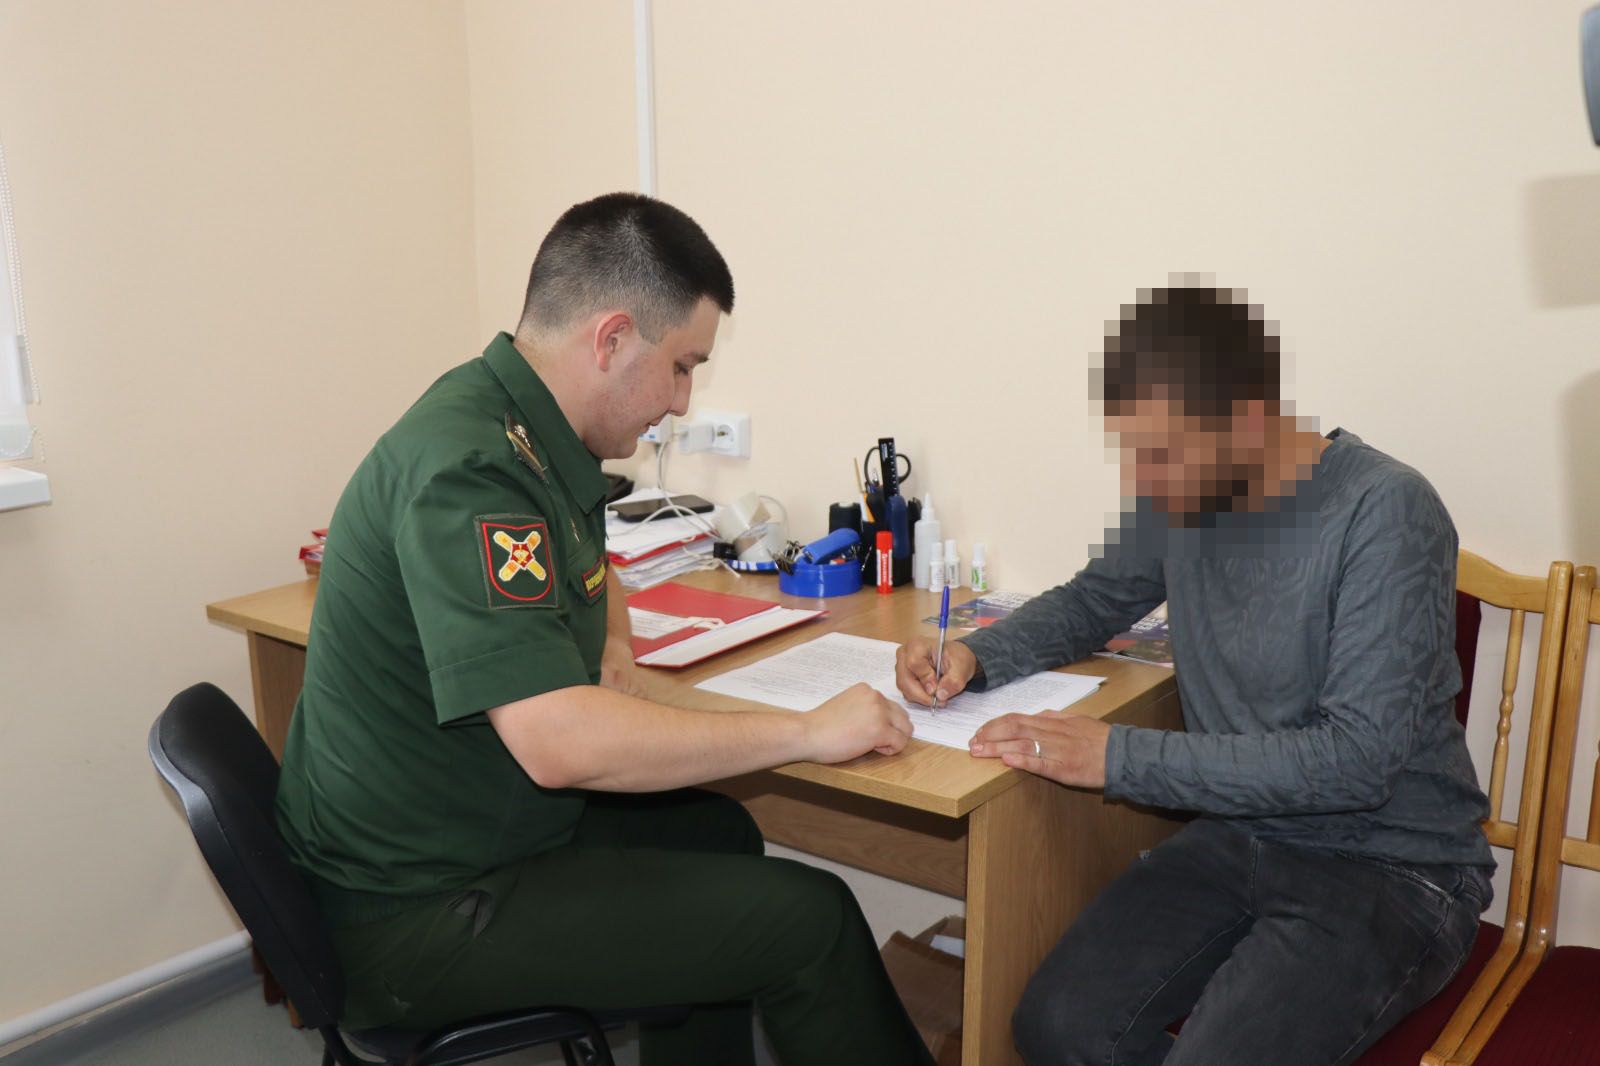 Трое парней из Ульяновска подписали контракт с Нурлатским военкоматом